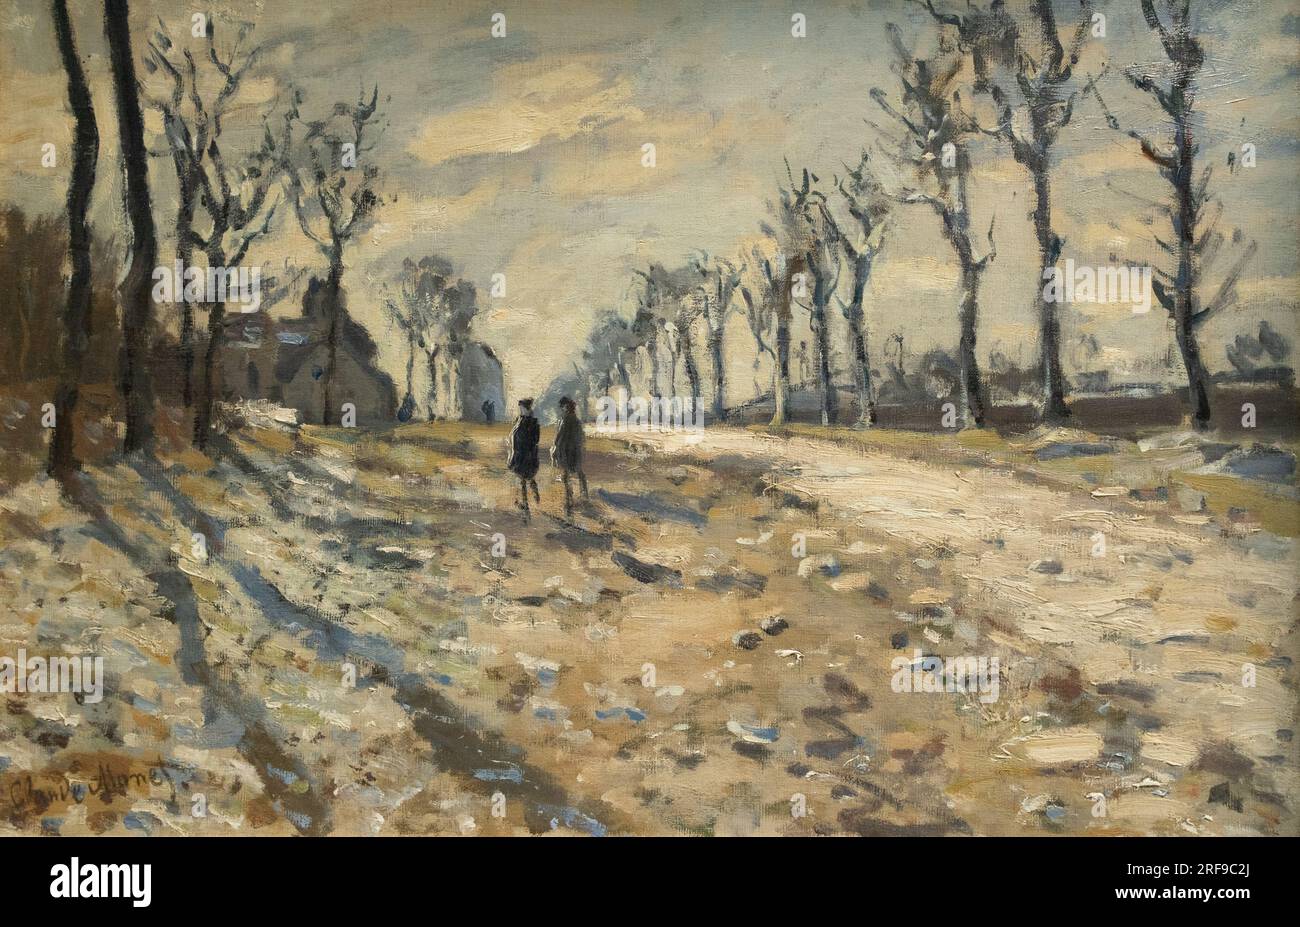 Claude Monet Gemälde; „Route, Effet de Neige, Soleil Couchant“ - Straße, Schnee und Sonnenuntergang, 1864; Monet Landschaft; französischer Impressionist aus dem 19. Jahrhundert Stockfoto